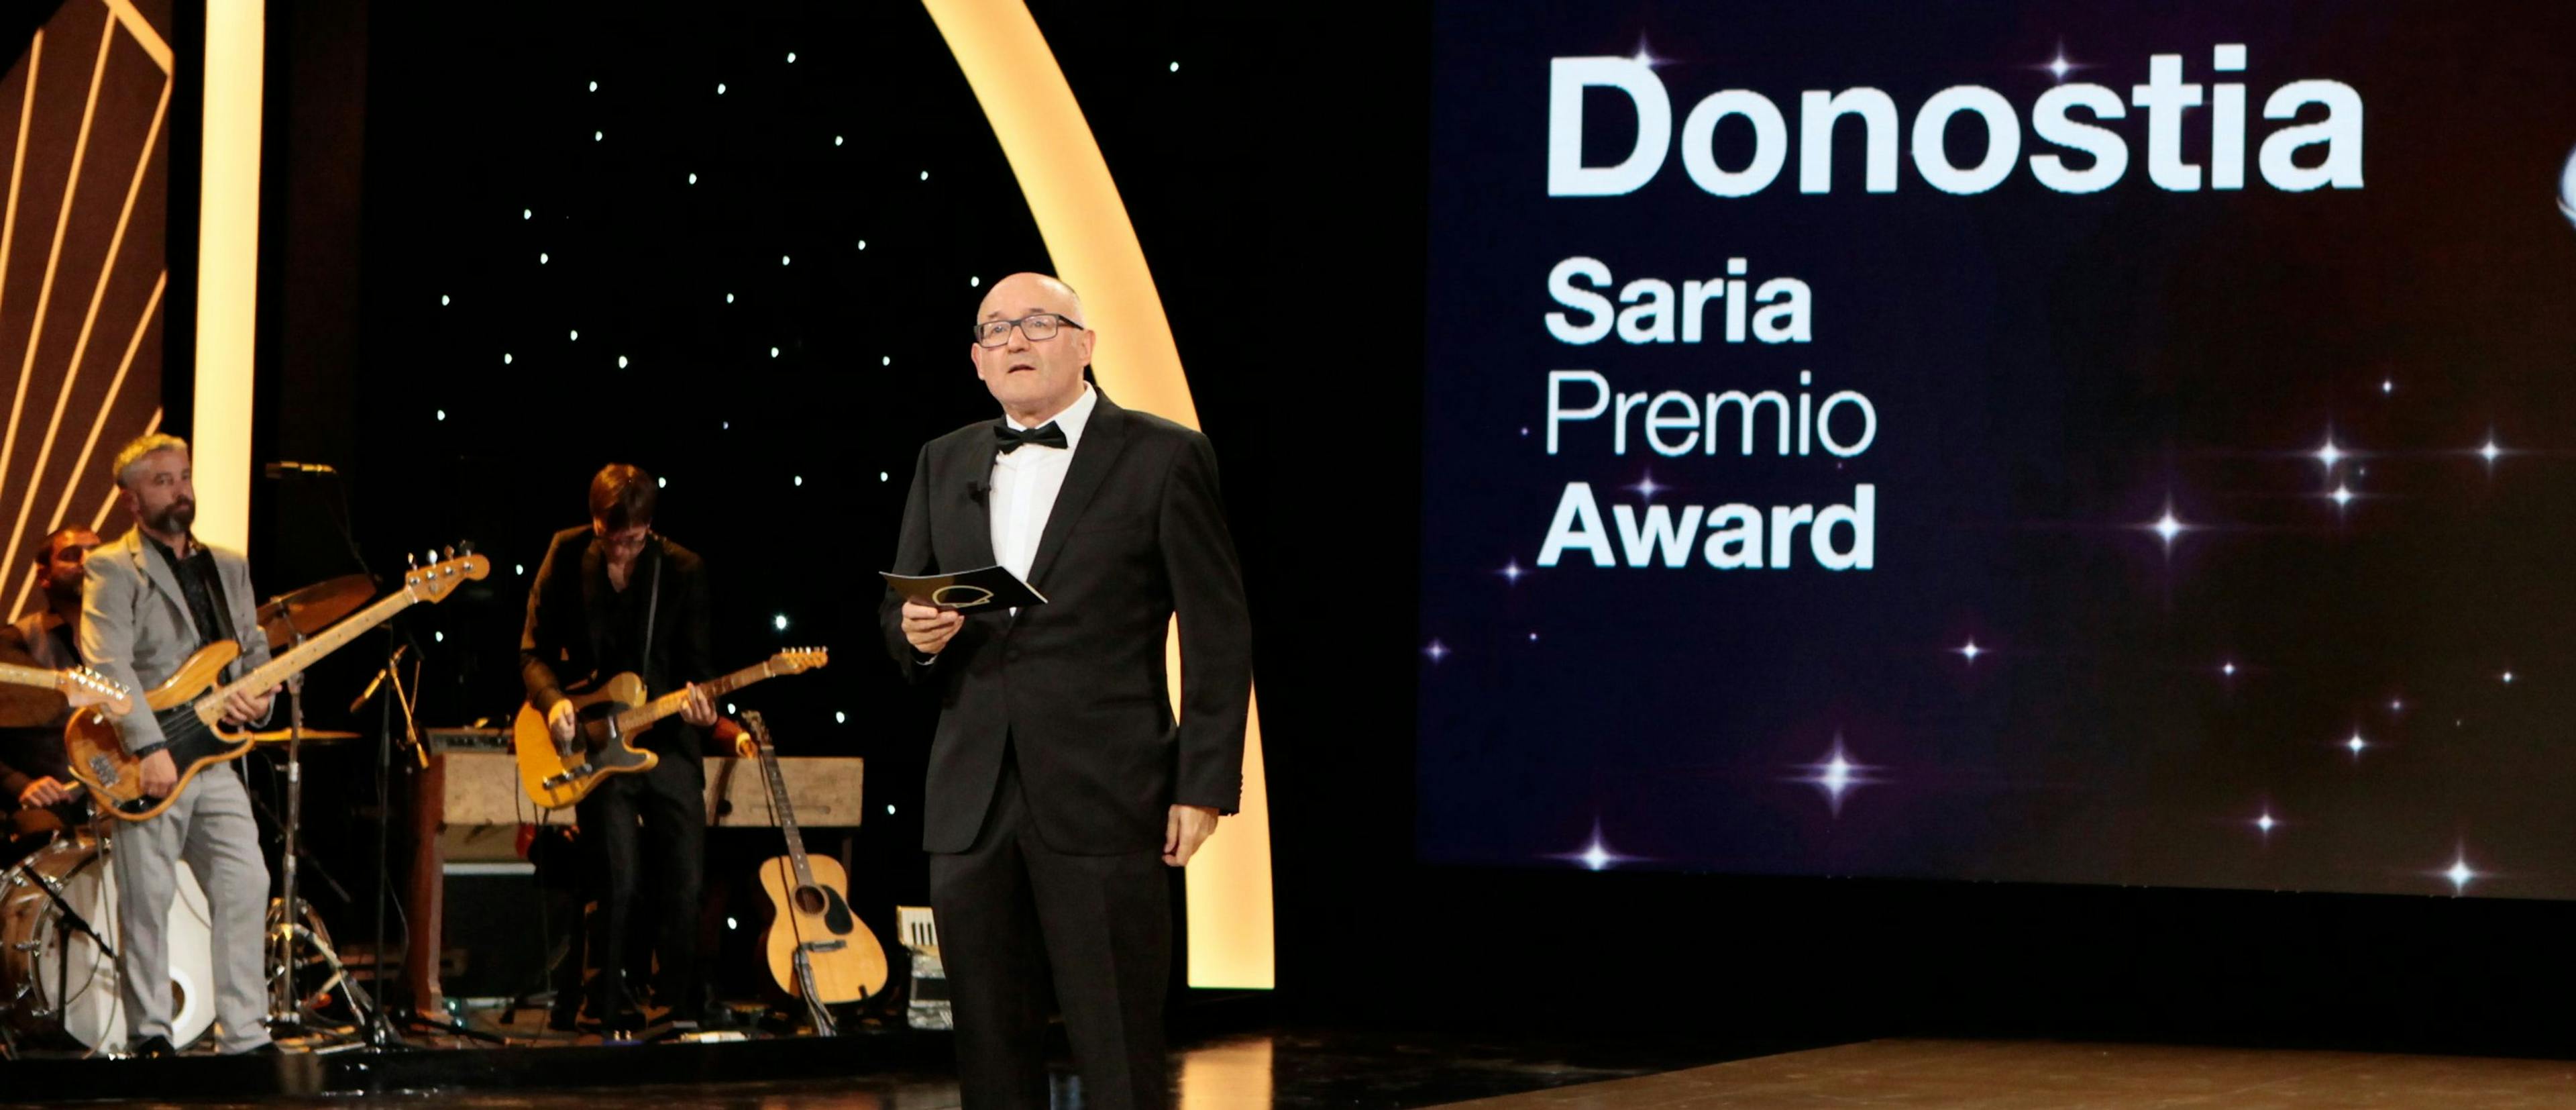 José Luis Rebordinos, director del Festival de San Sebastián, entrega el Premio Donostia virtualmente a Hayao Miyazaki